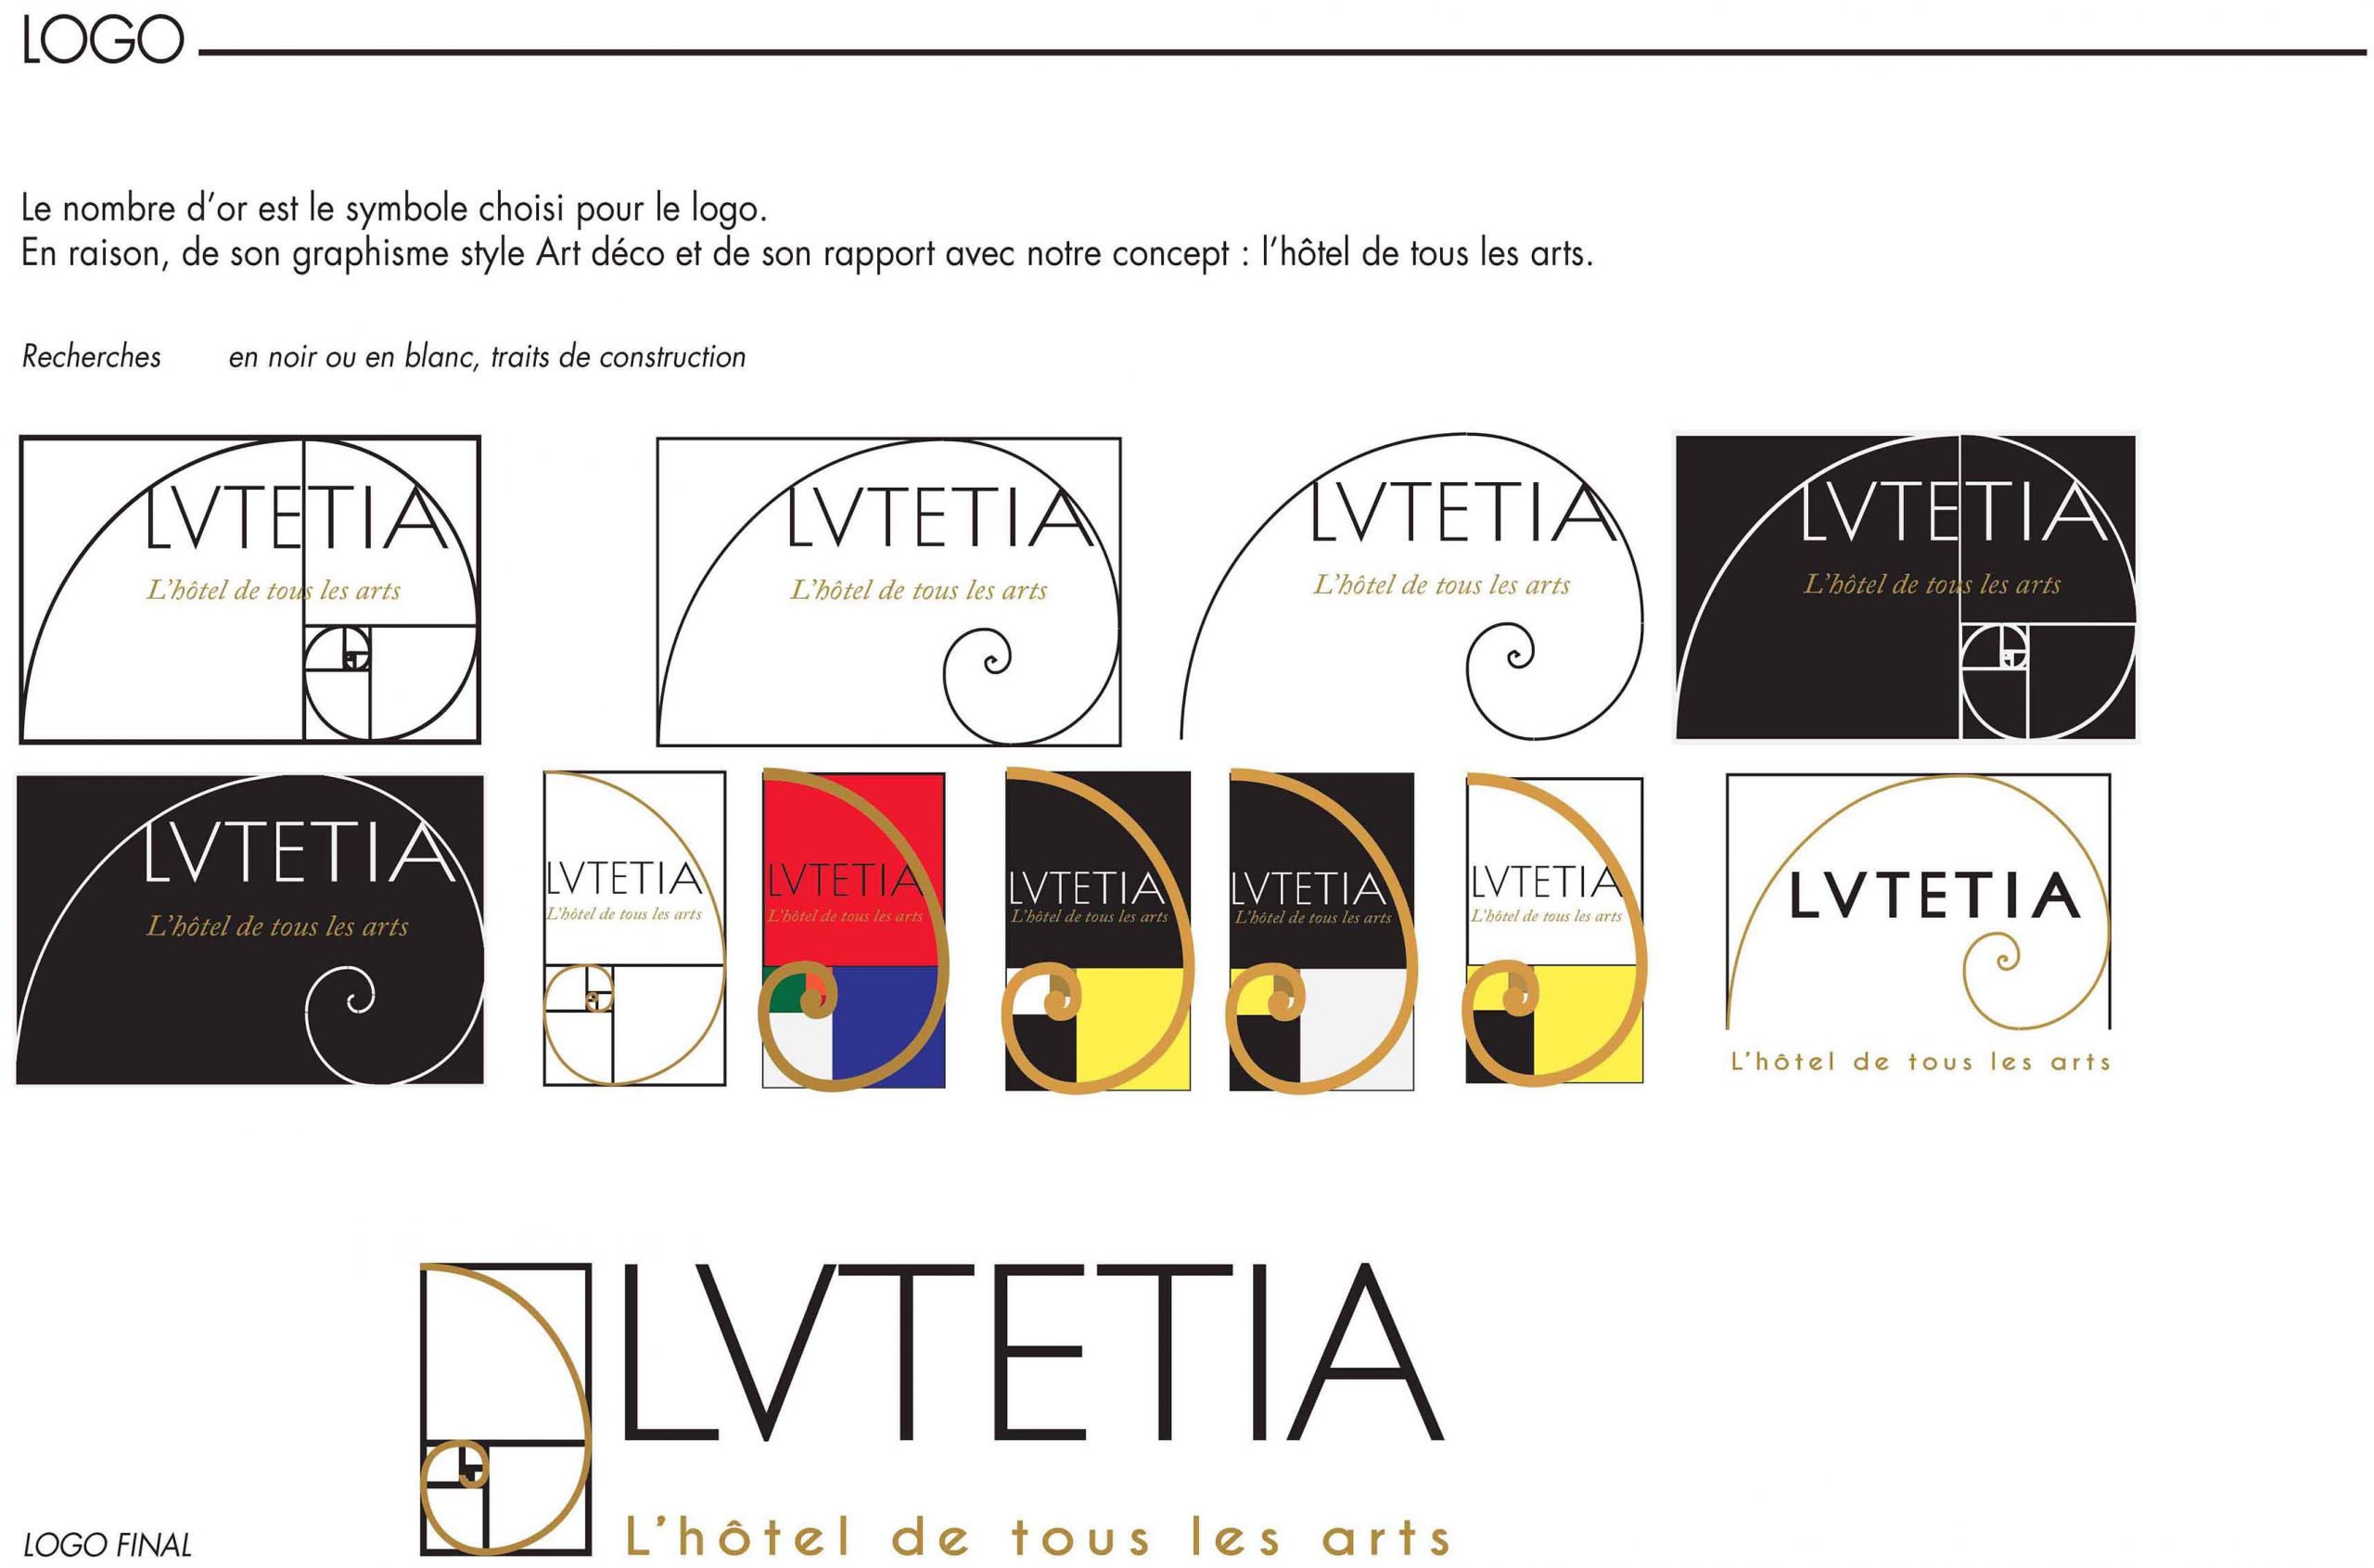 PROJET ESAT/ LUTETIA
Rénovation de l’identité du Lutetia, de son offre et de son apparence. ( logo, main visual, packaging collector, video, plaquette,...)